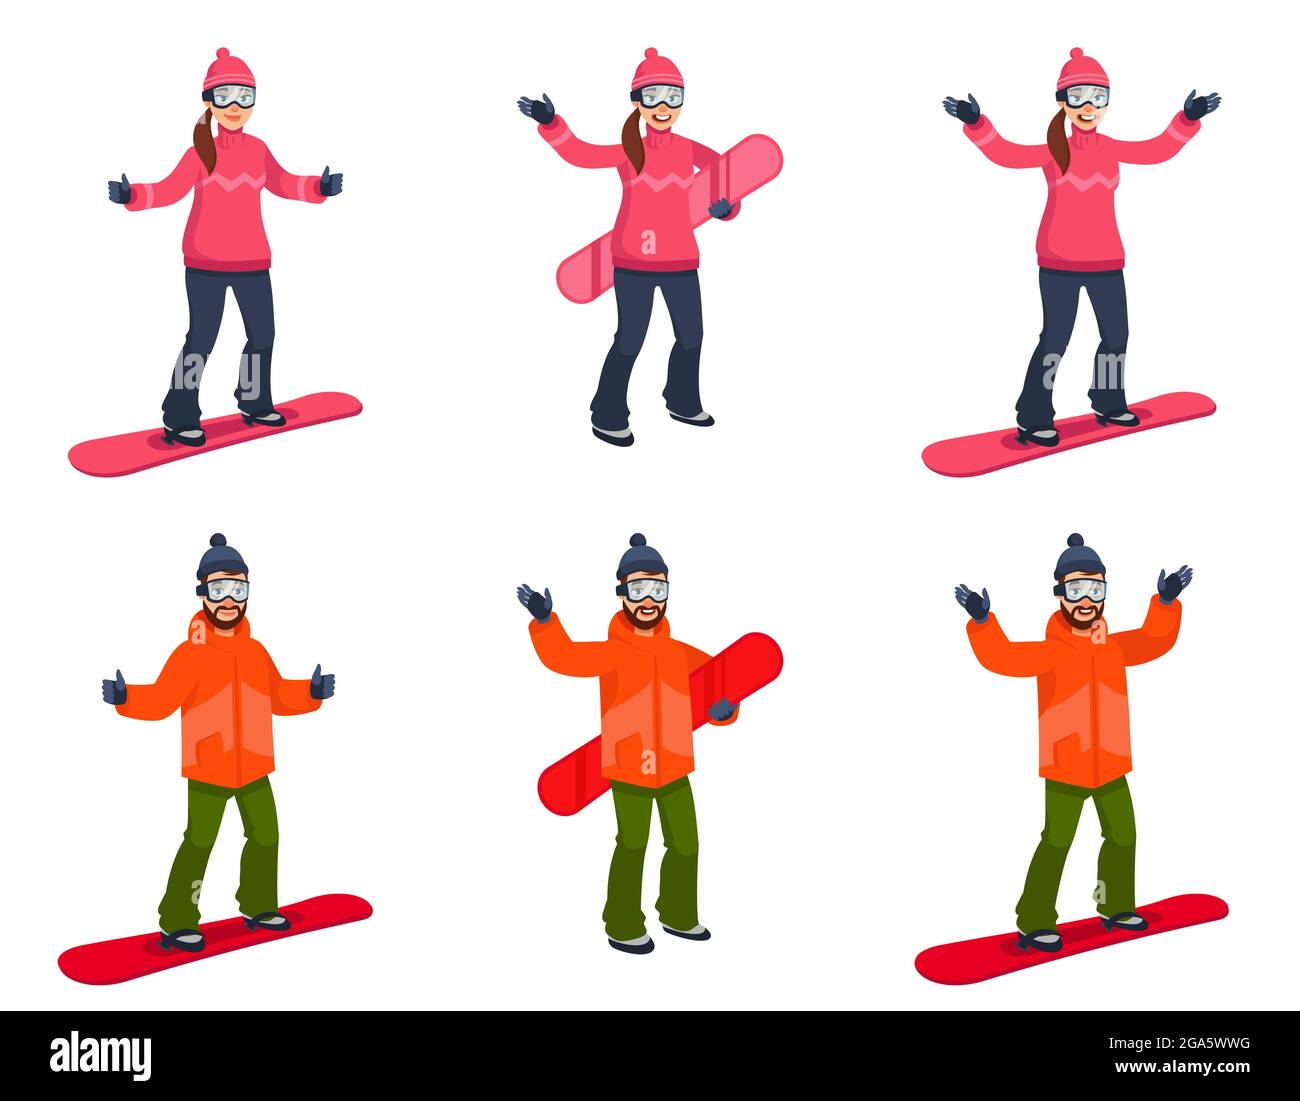 Snowboarder in verschiedenen Posen. Männliche und weibliche Charaktere im Cartoon-Stil. Stock Vektor